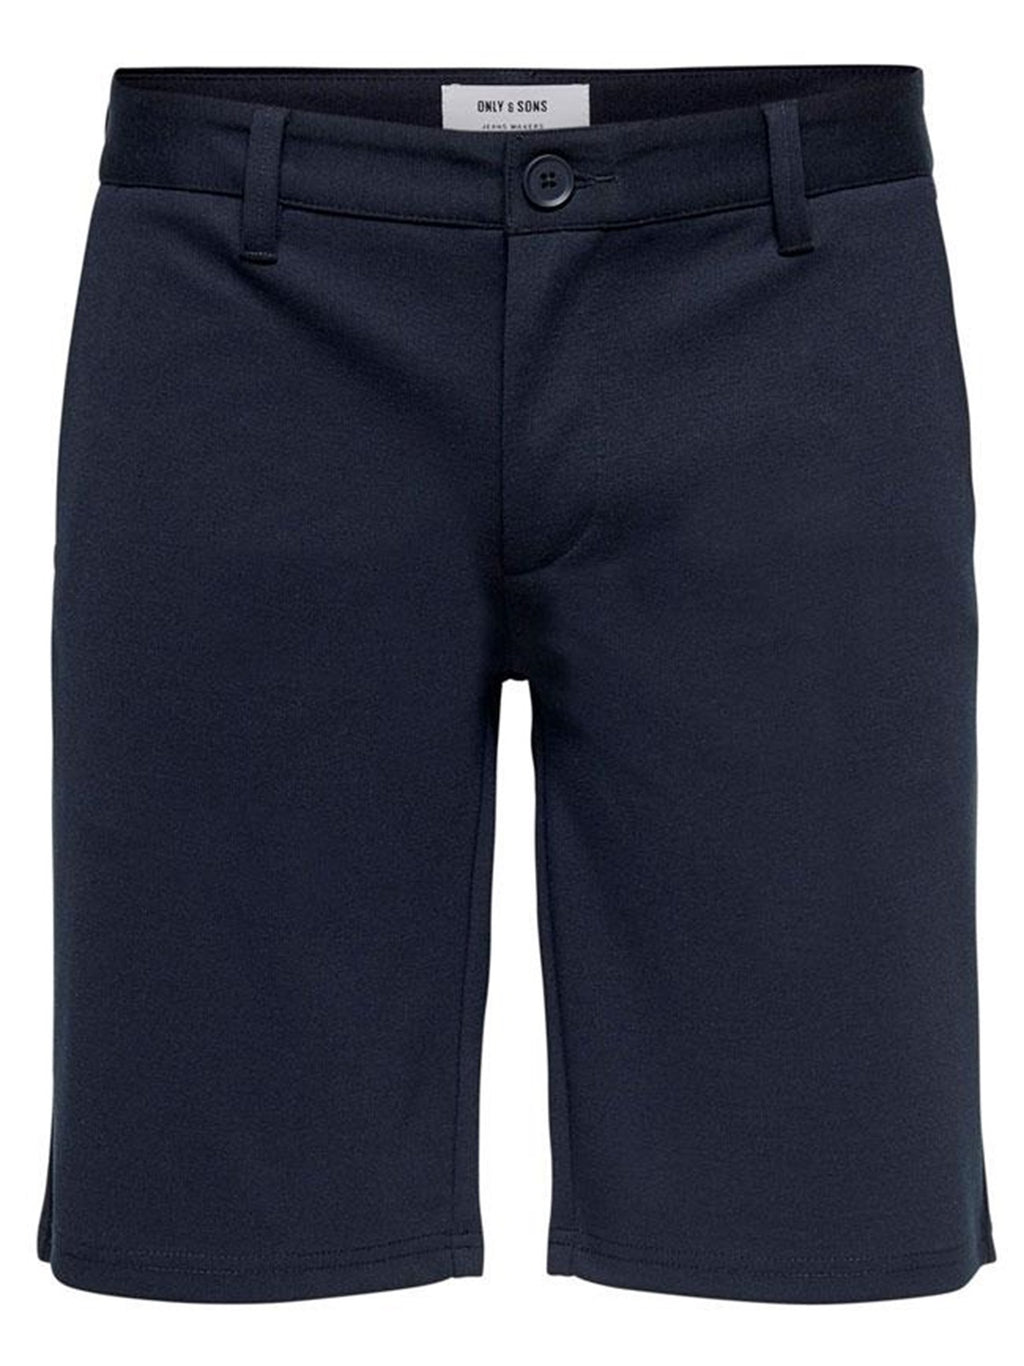 Mark shorts - Navy